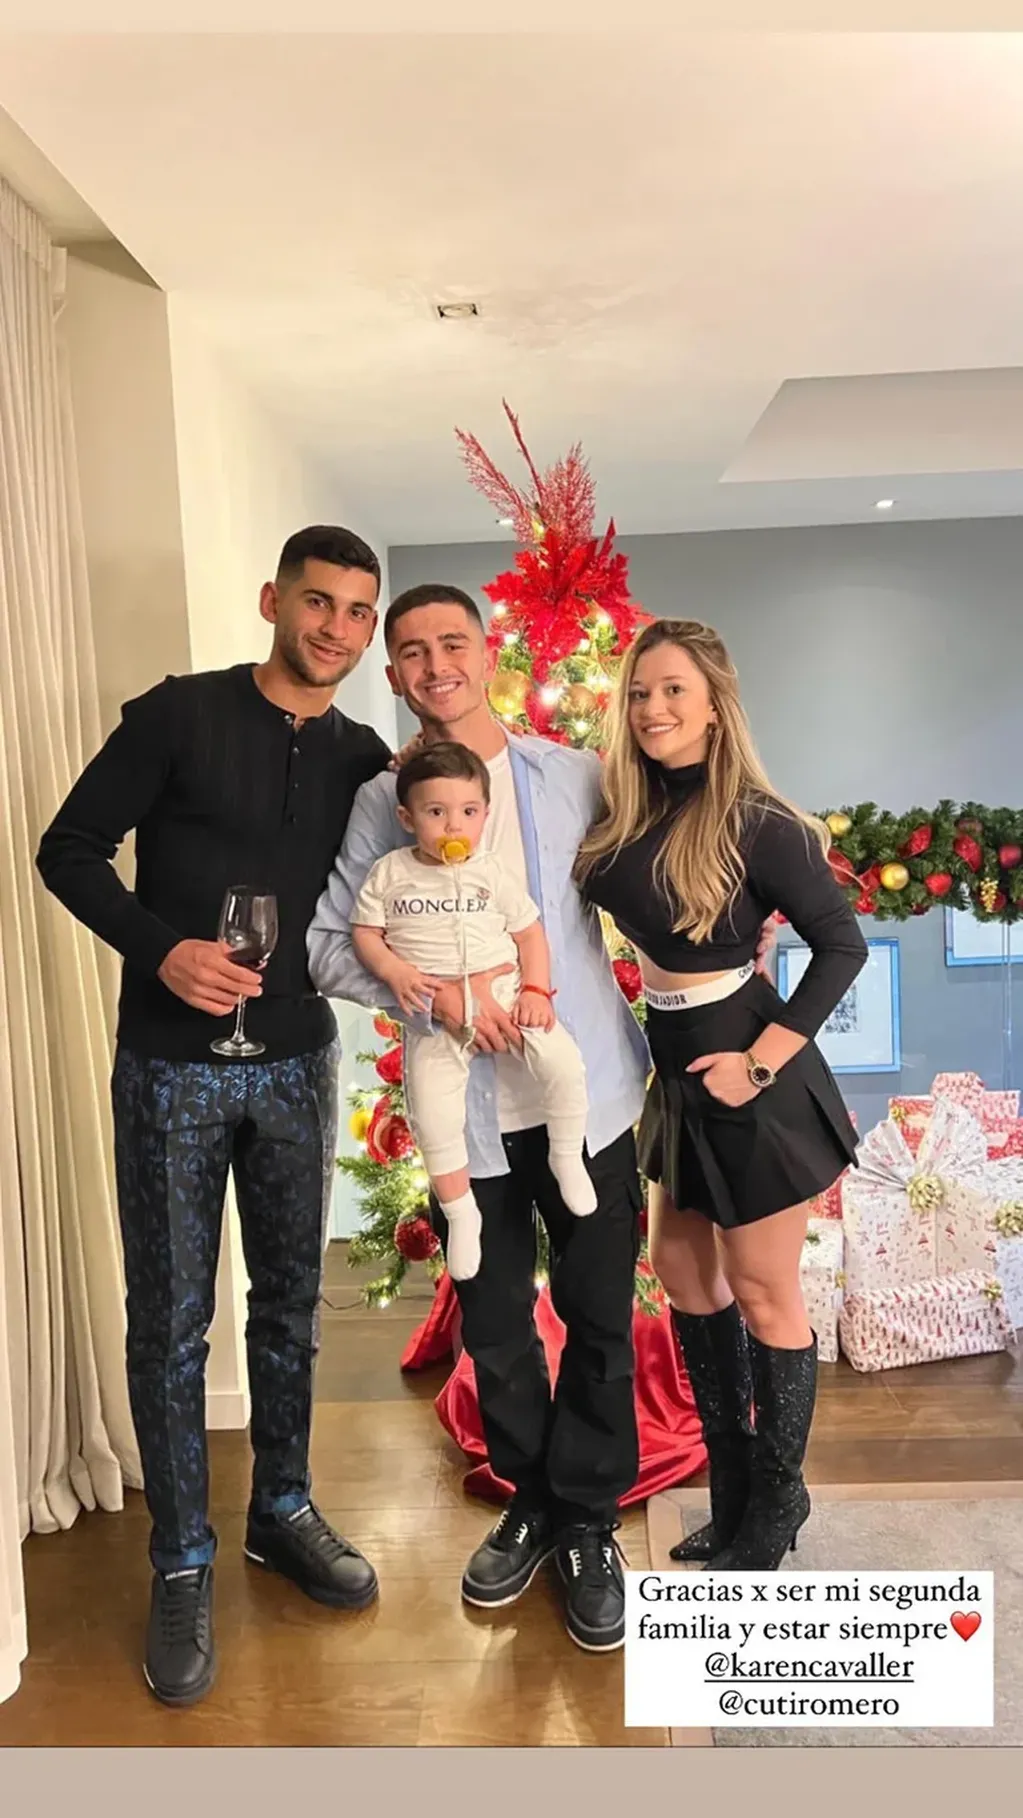 La Selección Argentina festejó la Navidad rodeada de los afectos y con la copa en casa. Instagram